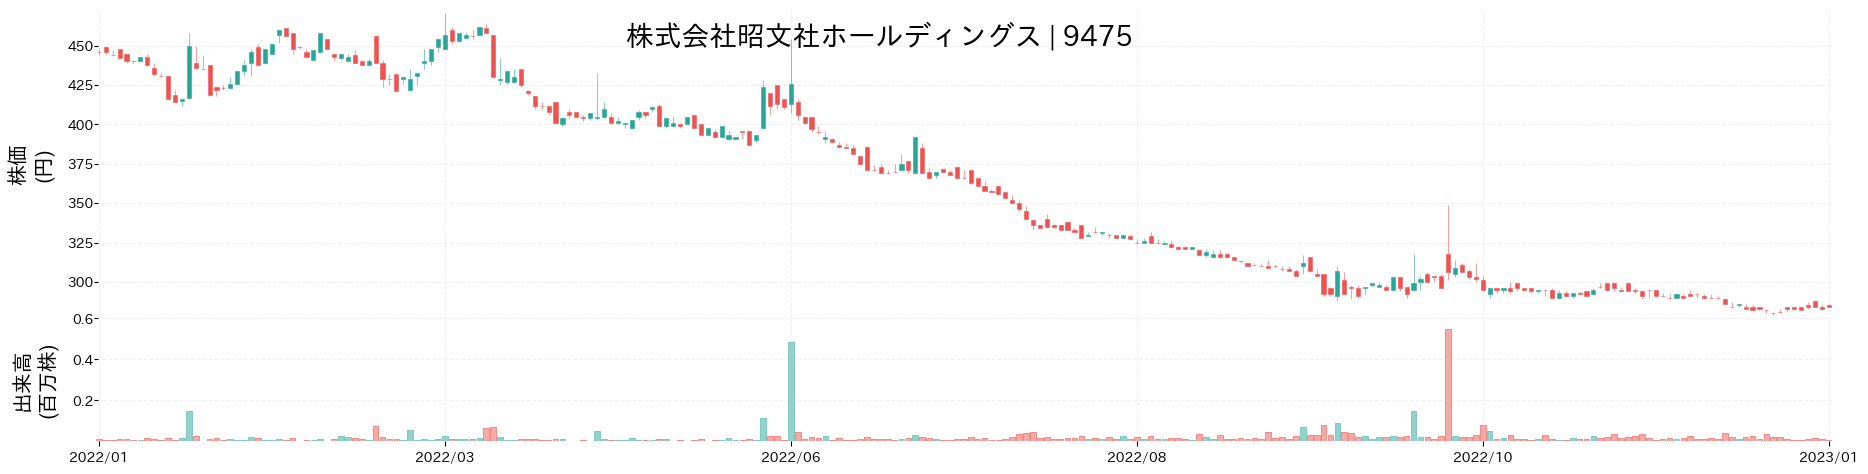 昭文社ホールディングスの株価推移(2022)